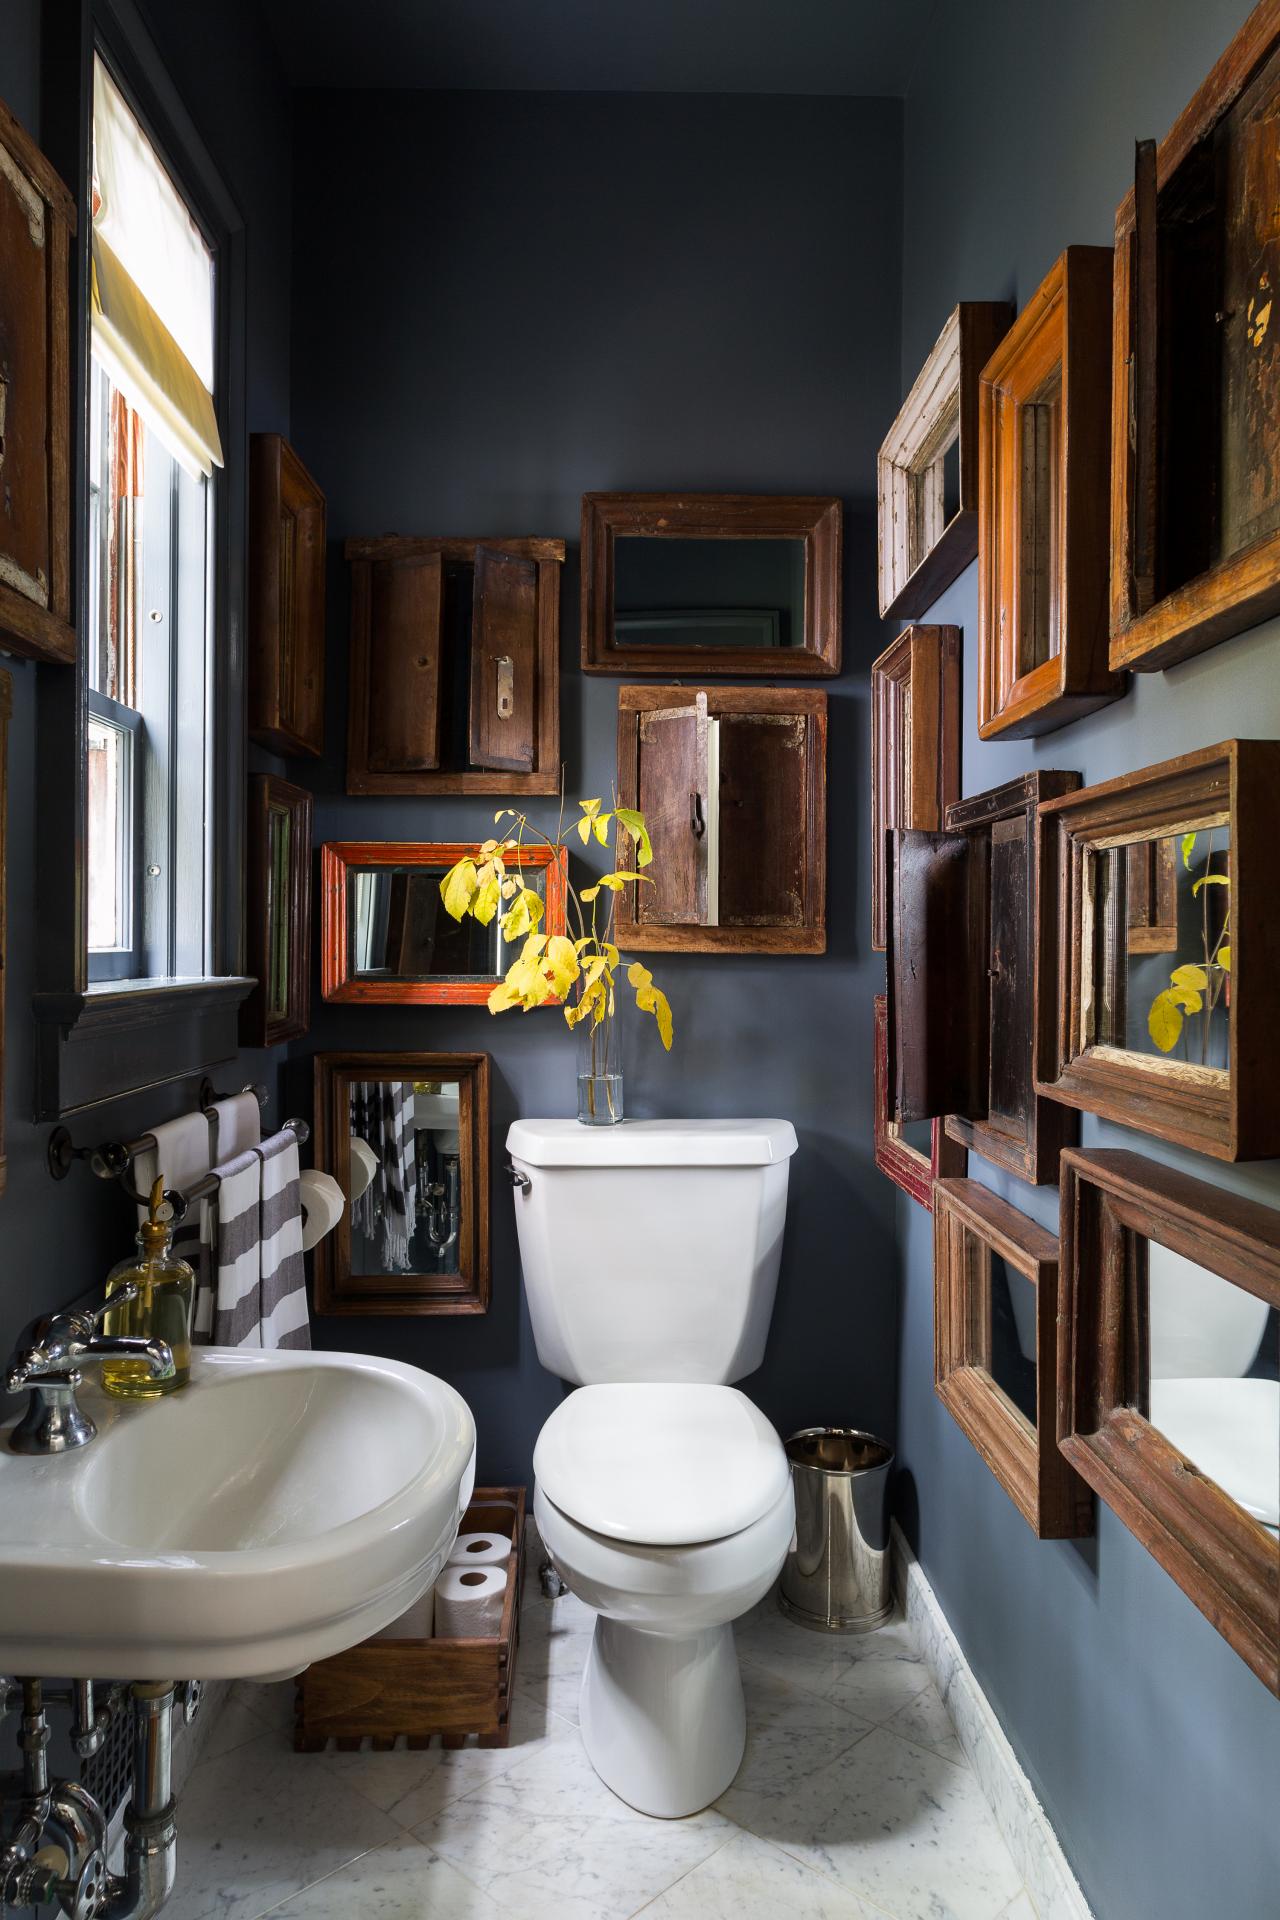 10 fancy toilet decorating ideas | Shelves above toilet, Bathroom shelves  over toilet, Wood toilet seat